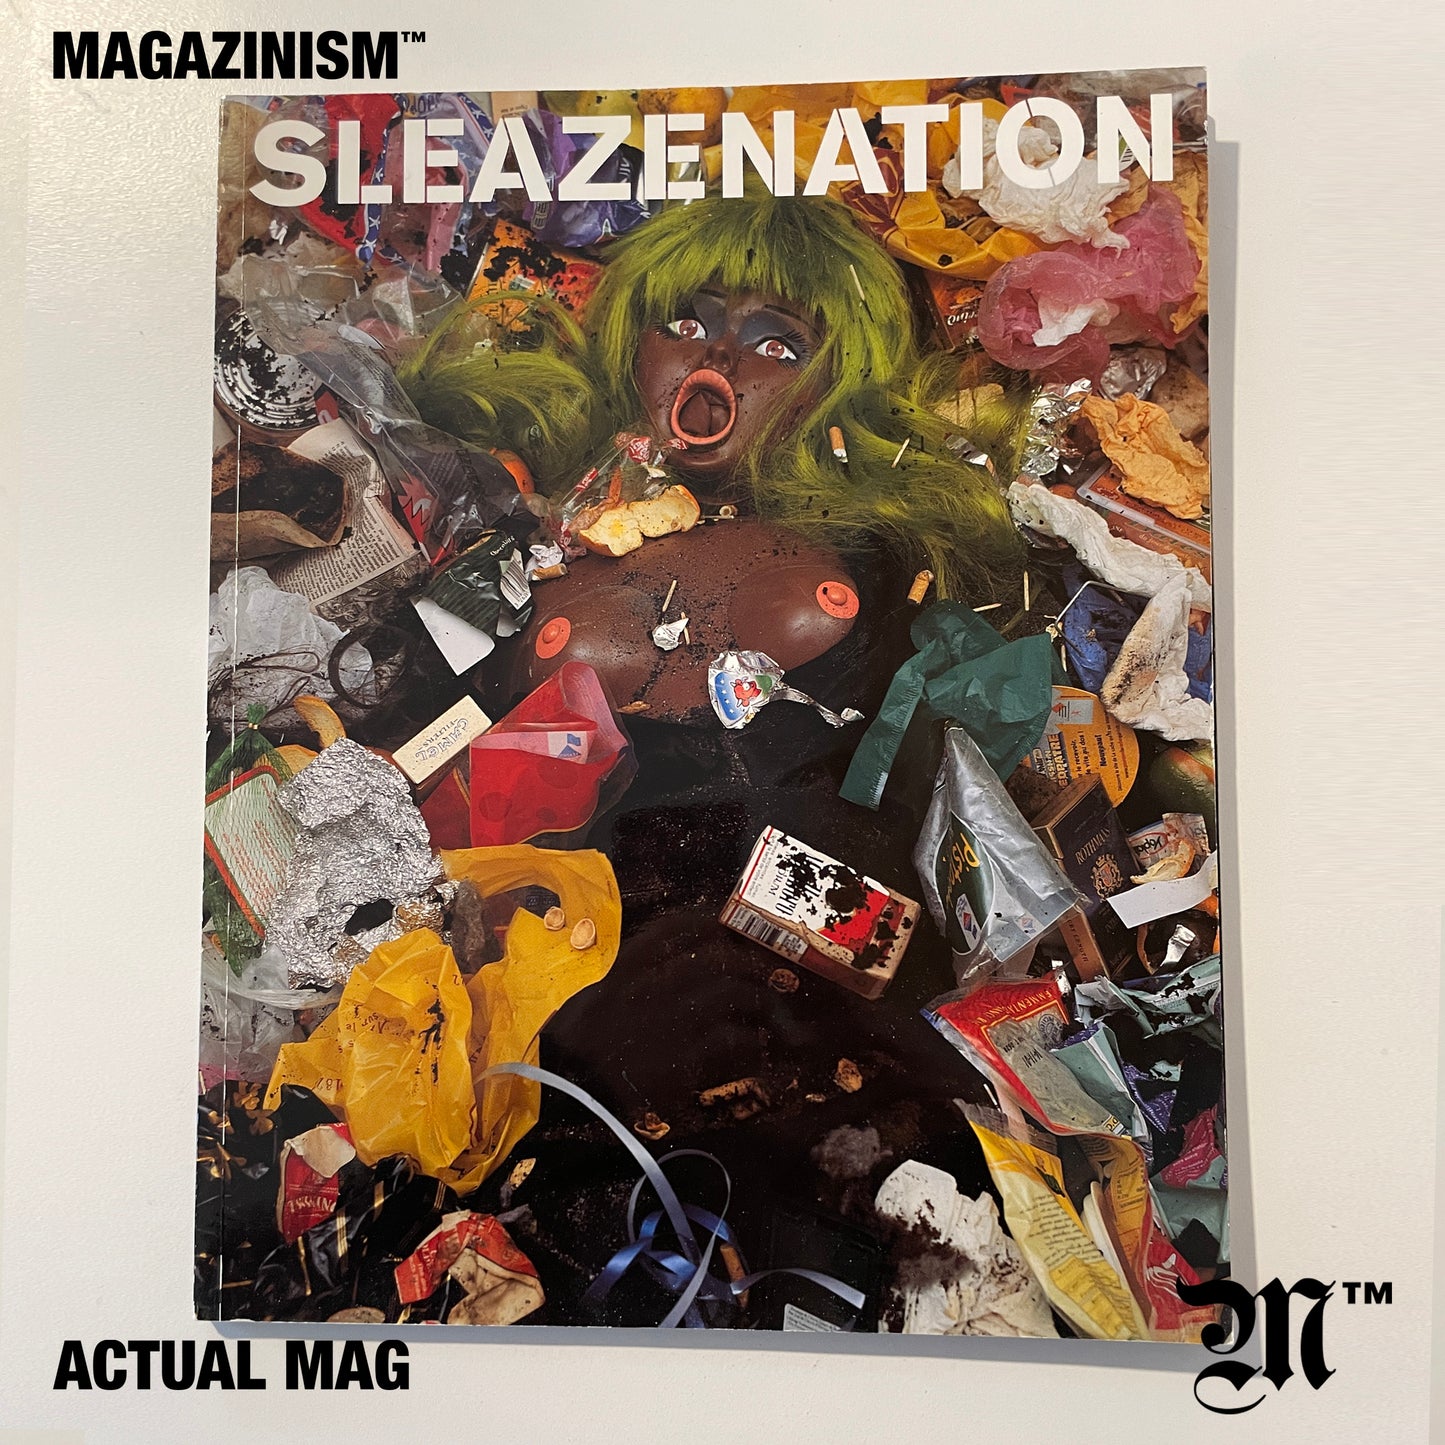 Sleazenation 2004 - Final Issue